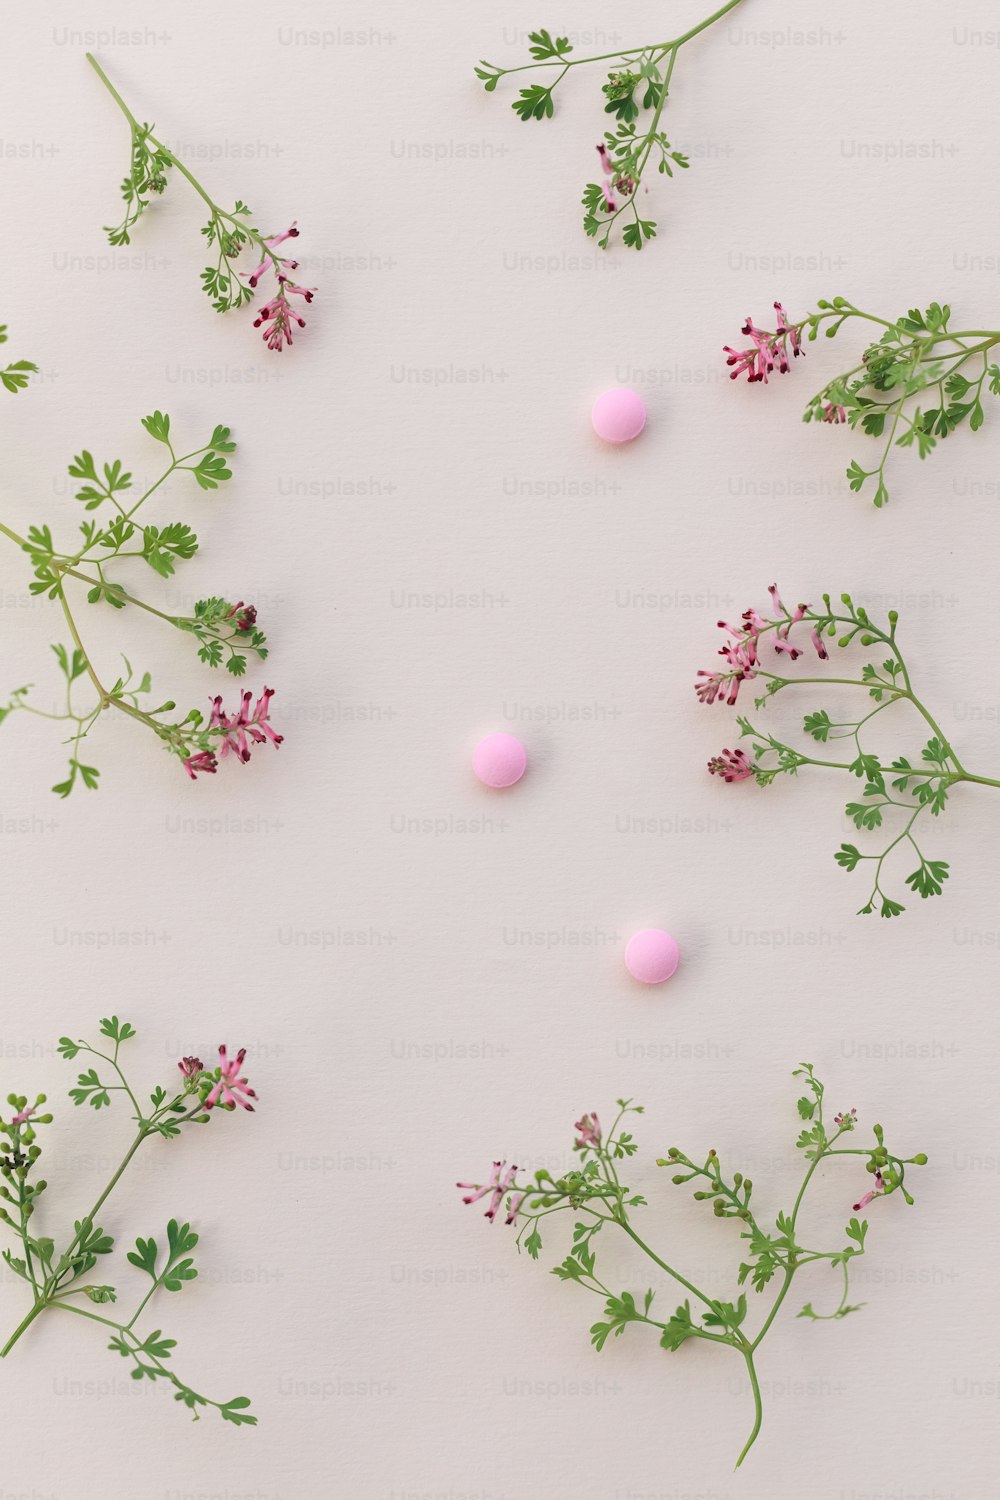 une table blanche surmontée de fleurs roses et vertes